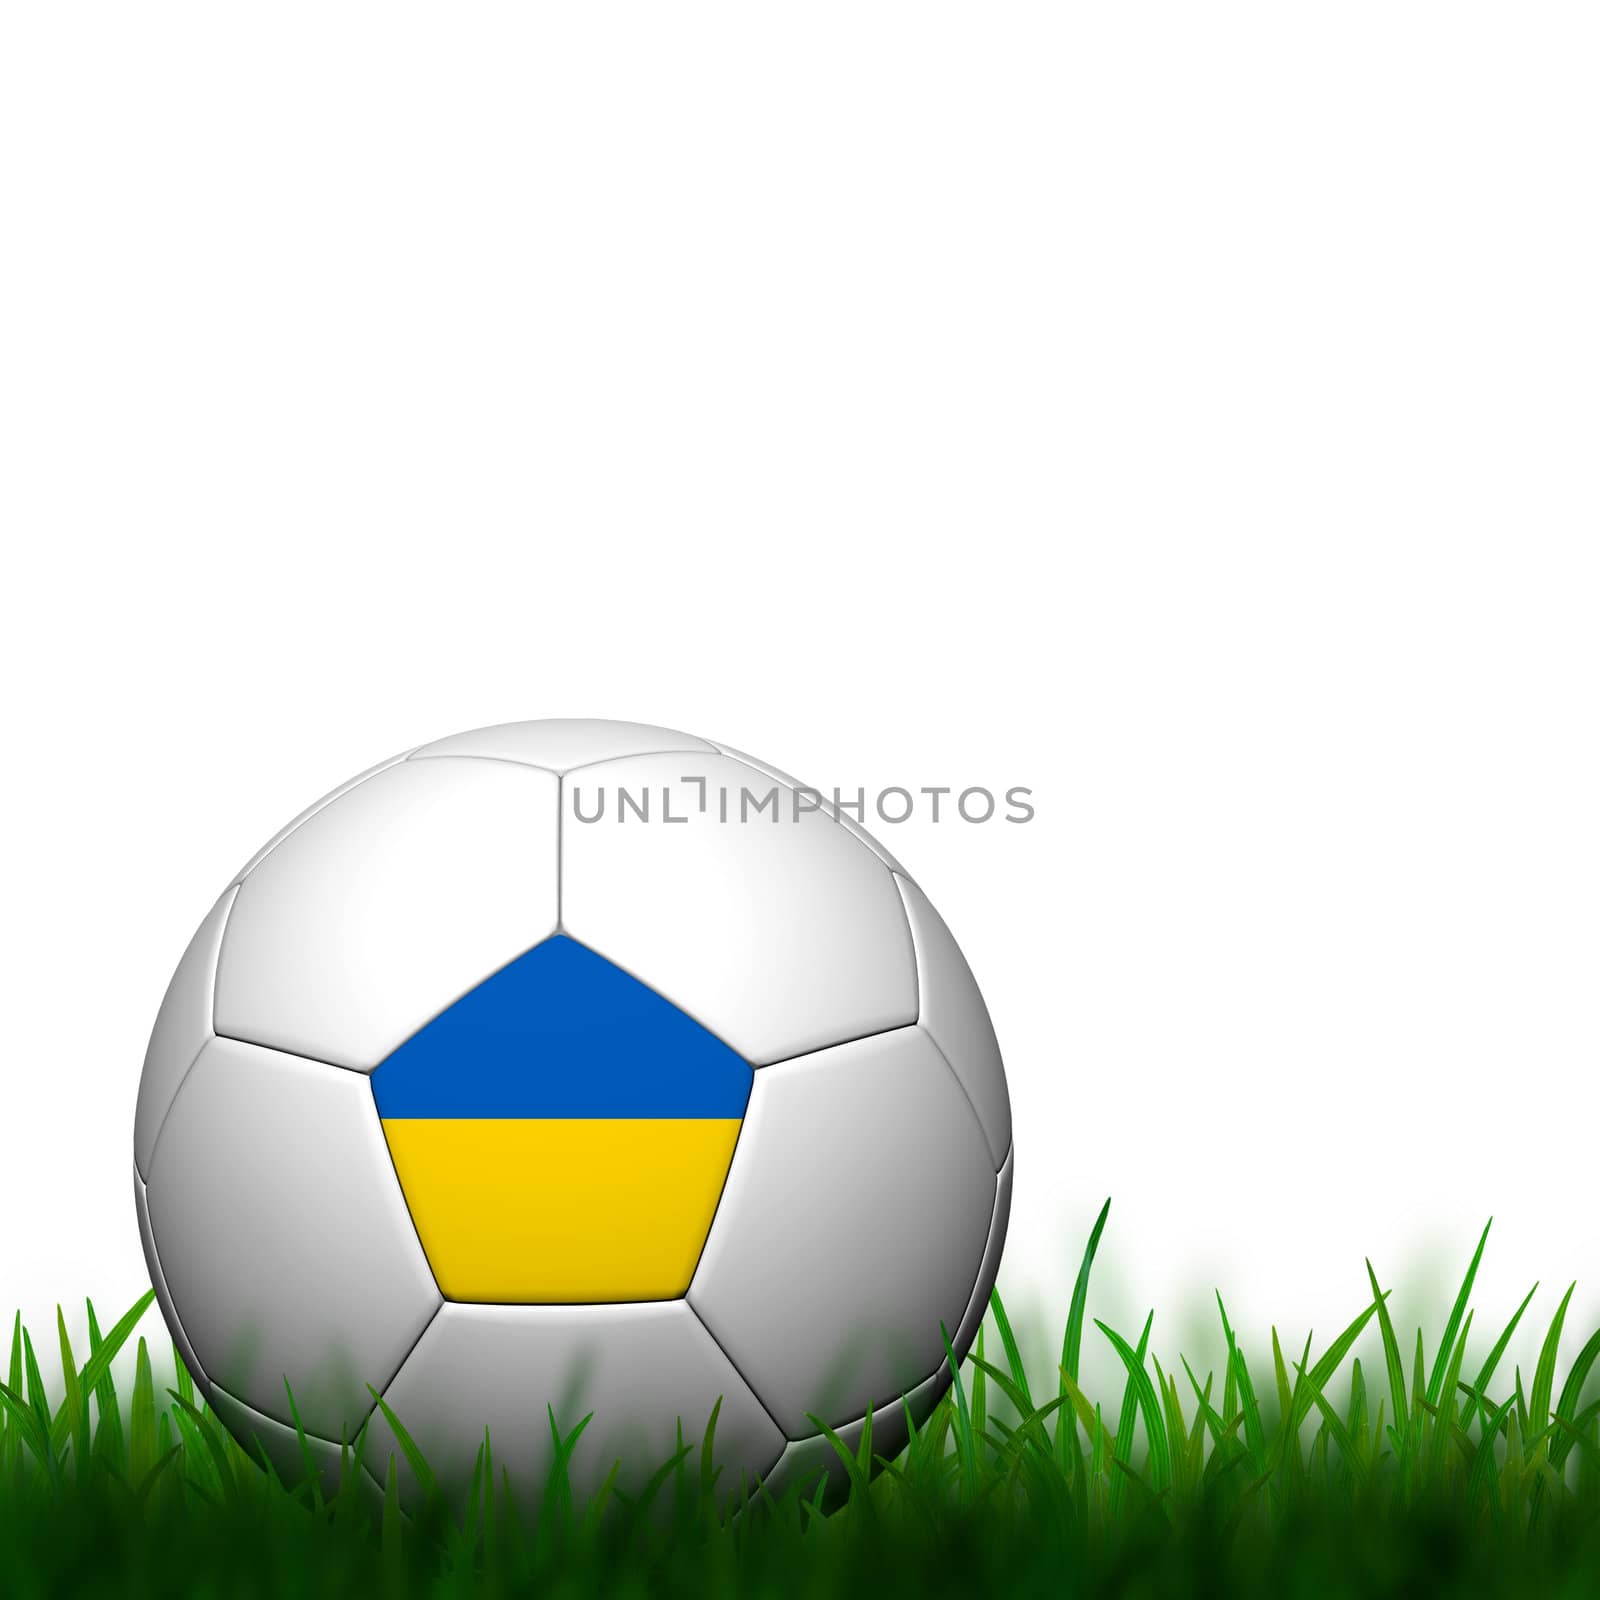 3D Football Ukraine Flag Patter in green grass on white background